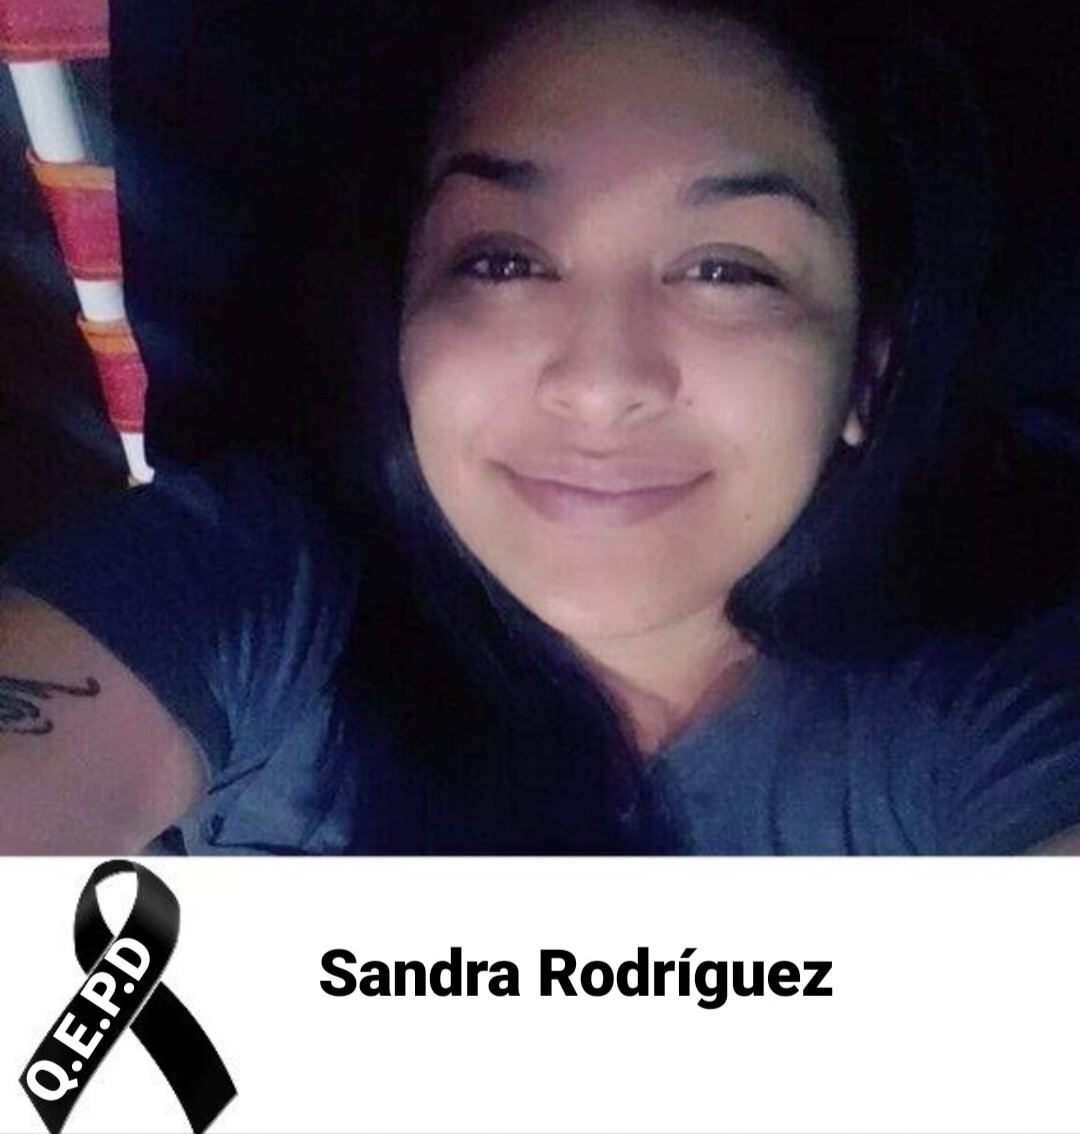 Triste noticia- Sandra Rodríguez padecía cáncer y había sido despedida